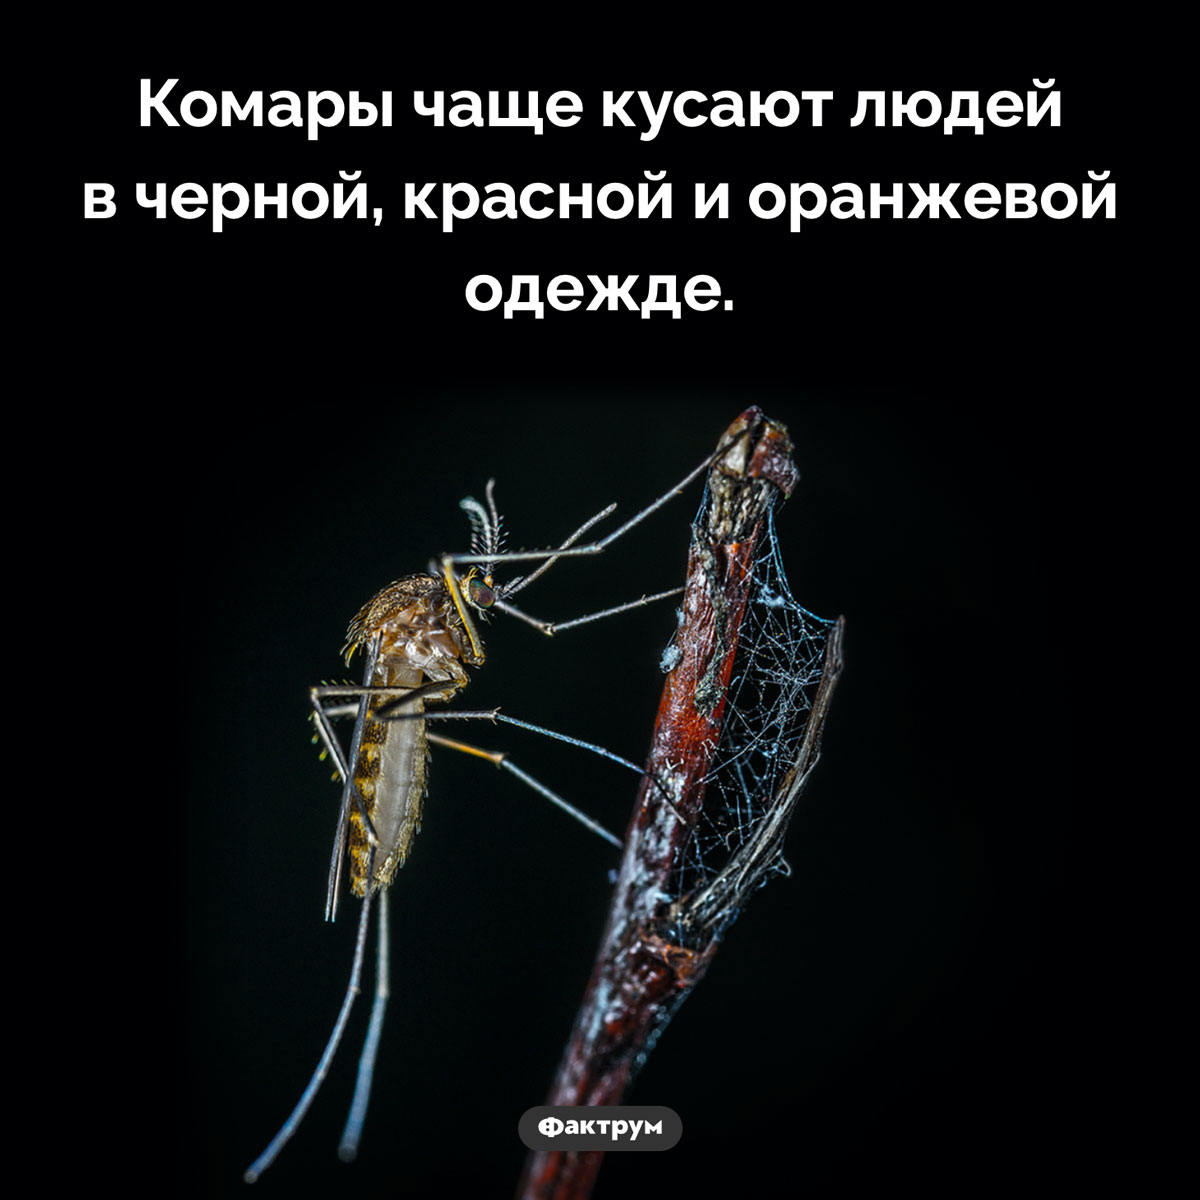 Кого не кусают комары. Комары чаще кусают людей в черной, красной и оранжевой одежде.